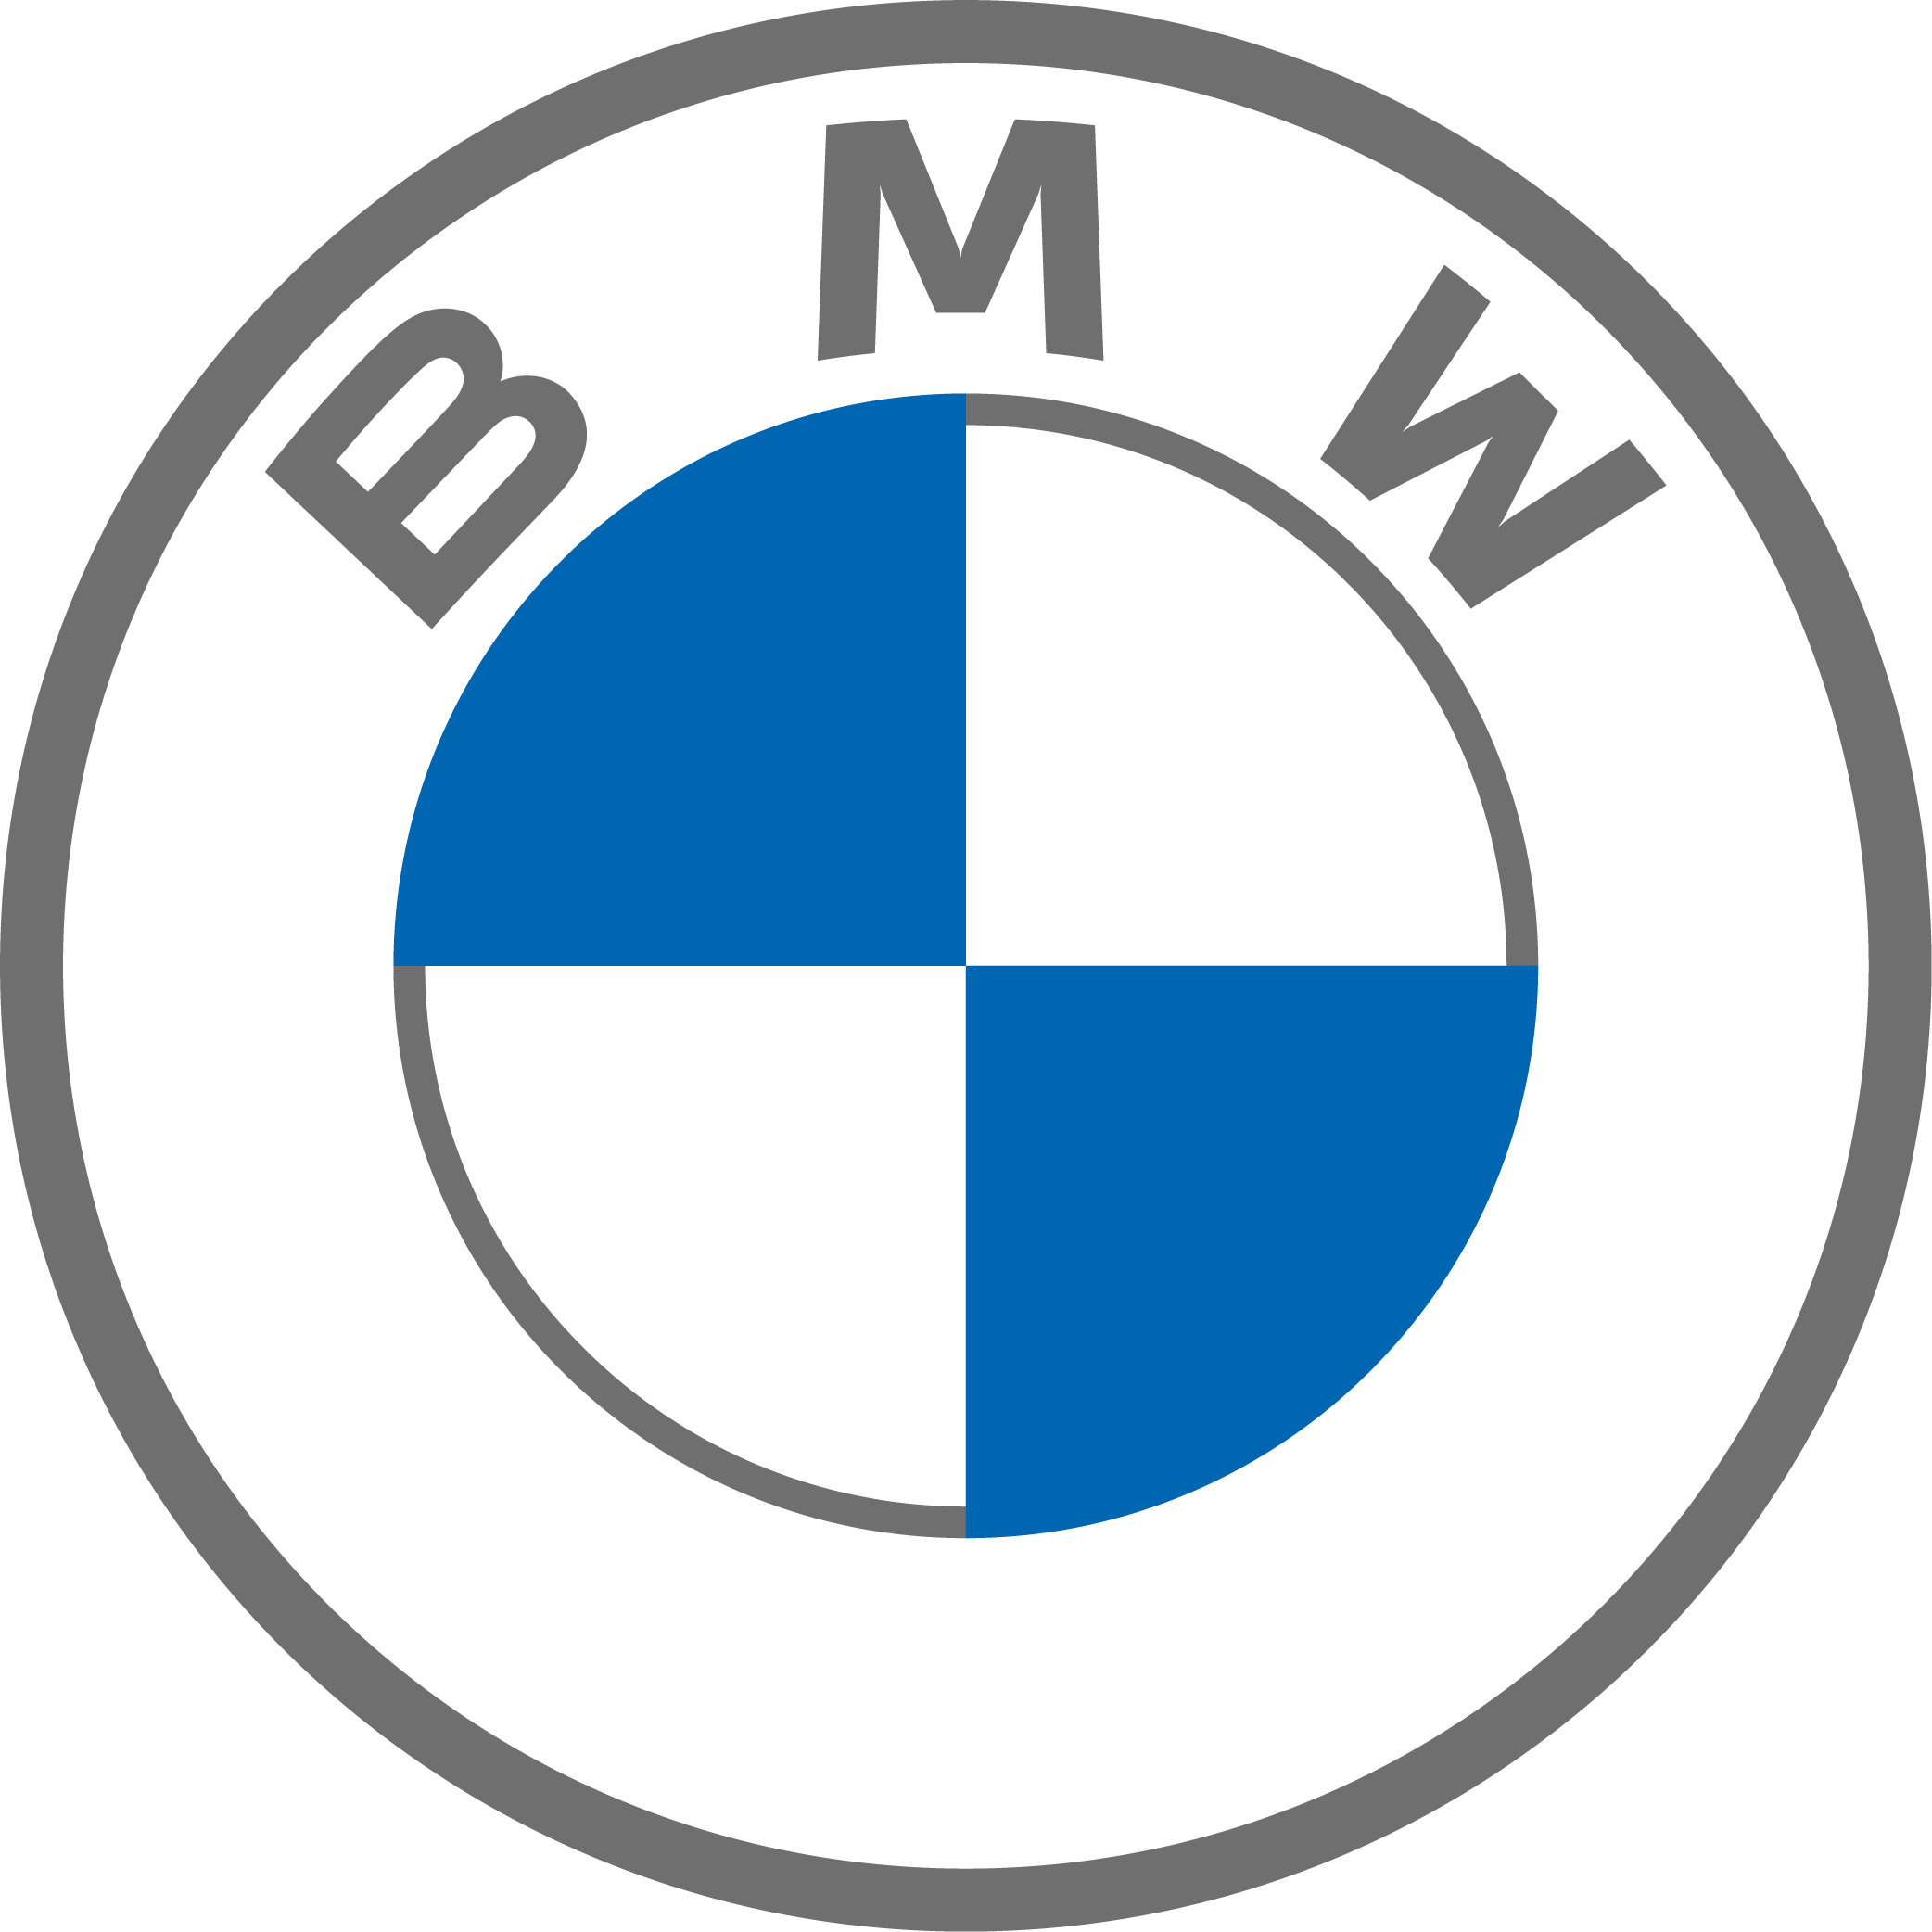 Νέα BMW X7: Τα πάντα σε υπερθετικό βαθμό (vid)